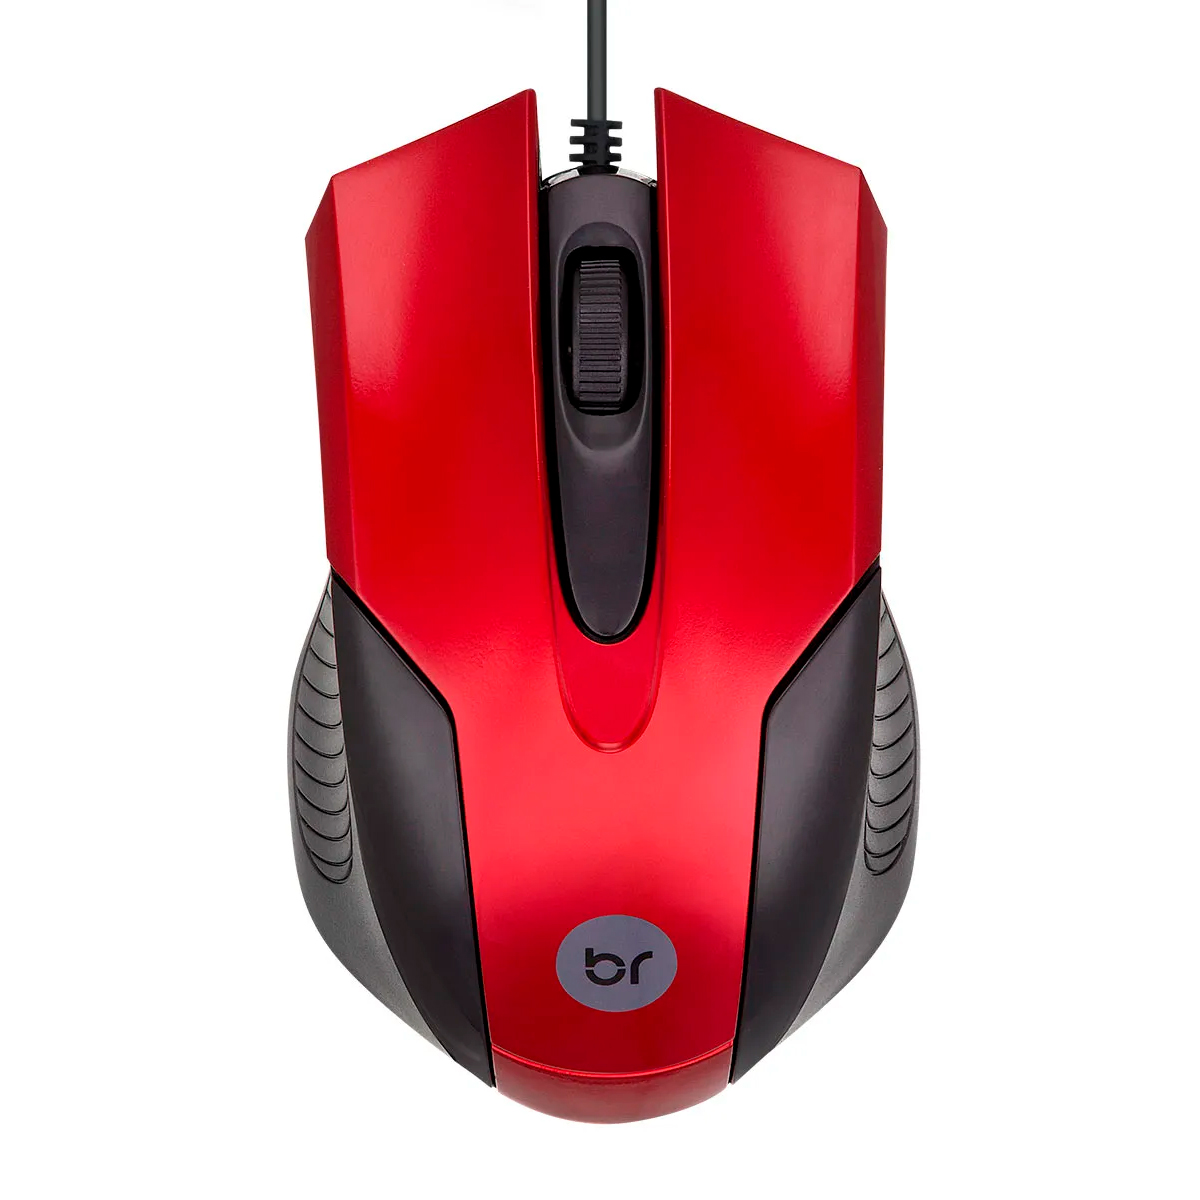 Mouse Bright - 1000dpi - Preto e Vermelho - USB - 02210